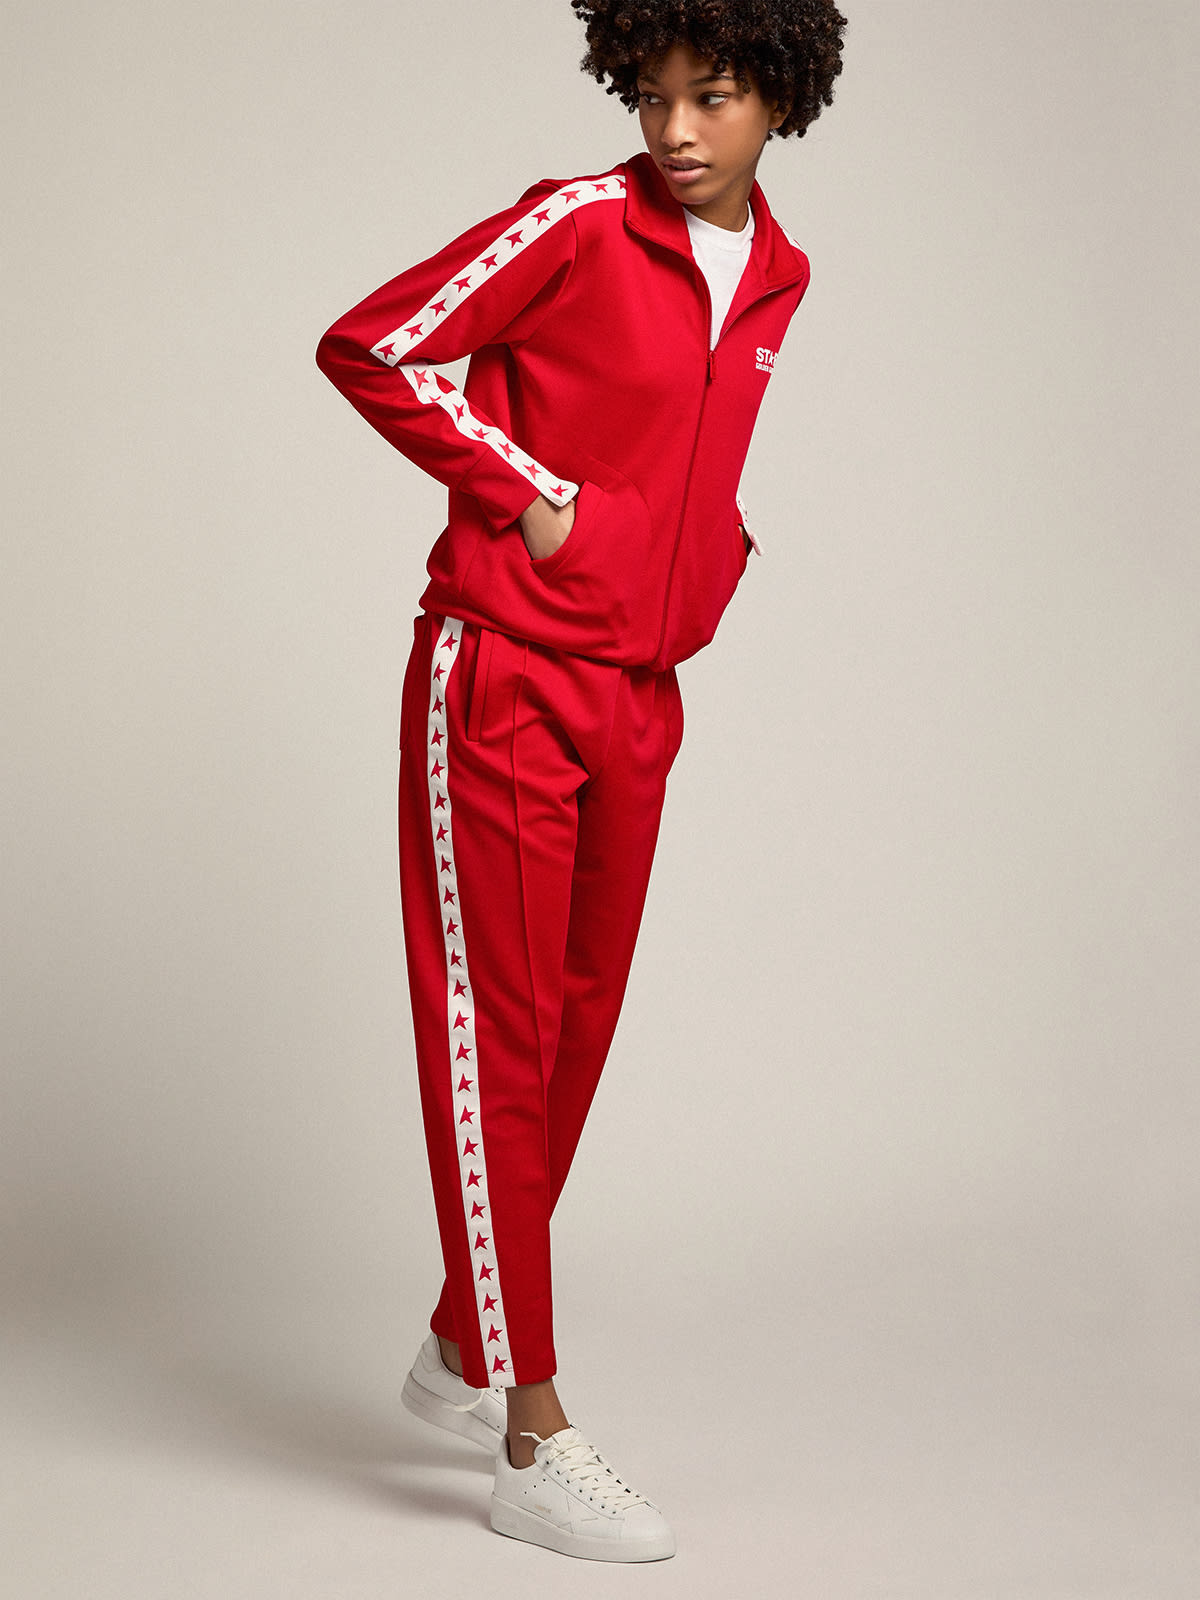 Golden Goose - Calça de jogging feminina vermelha com estrelas vermelhas nas laterais in 